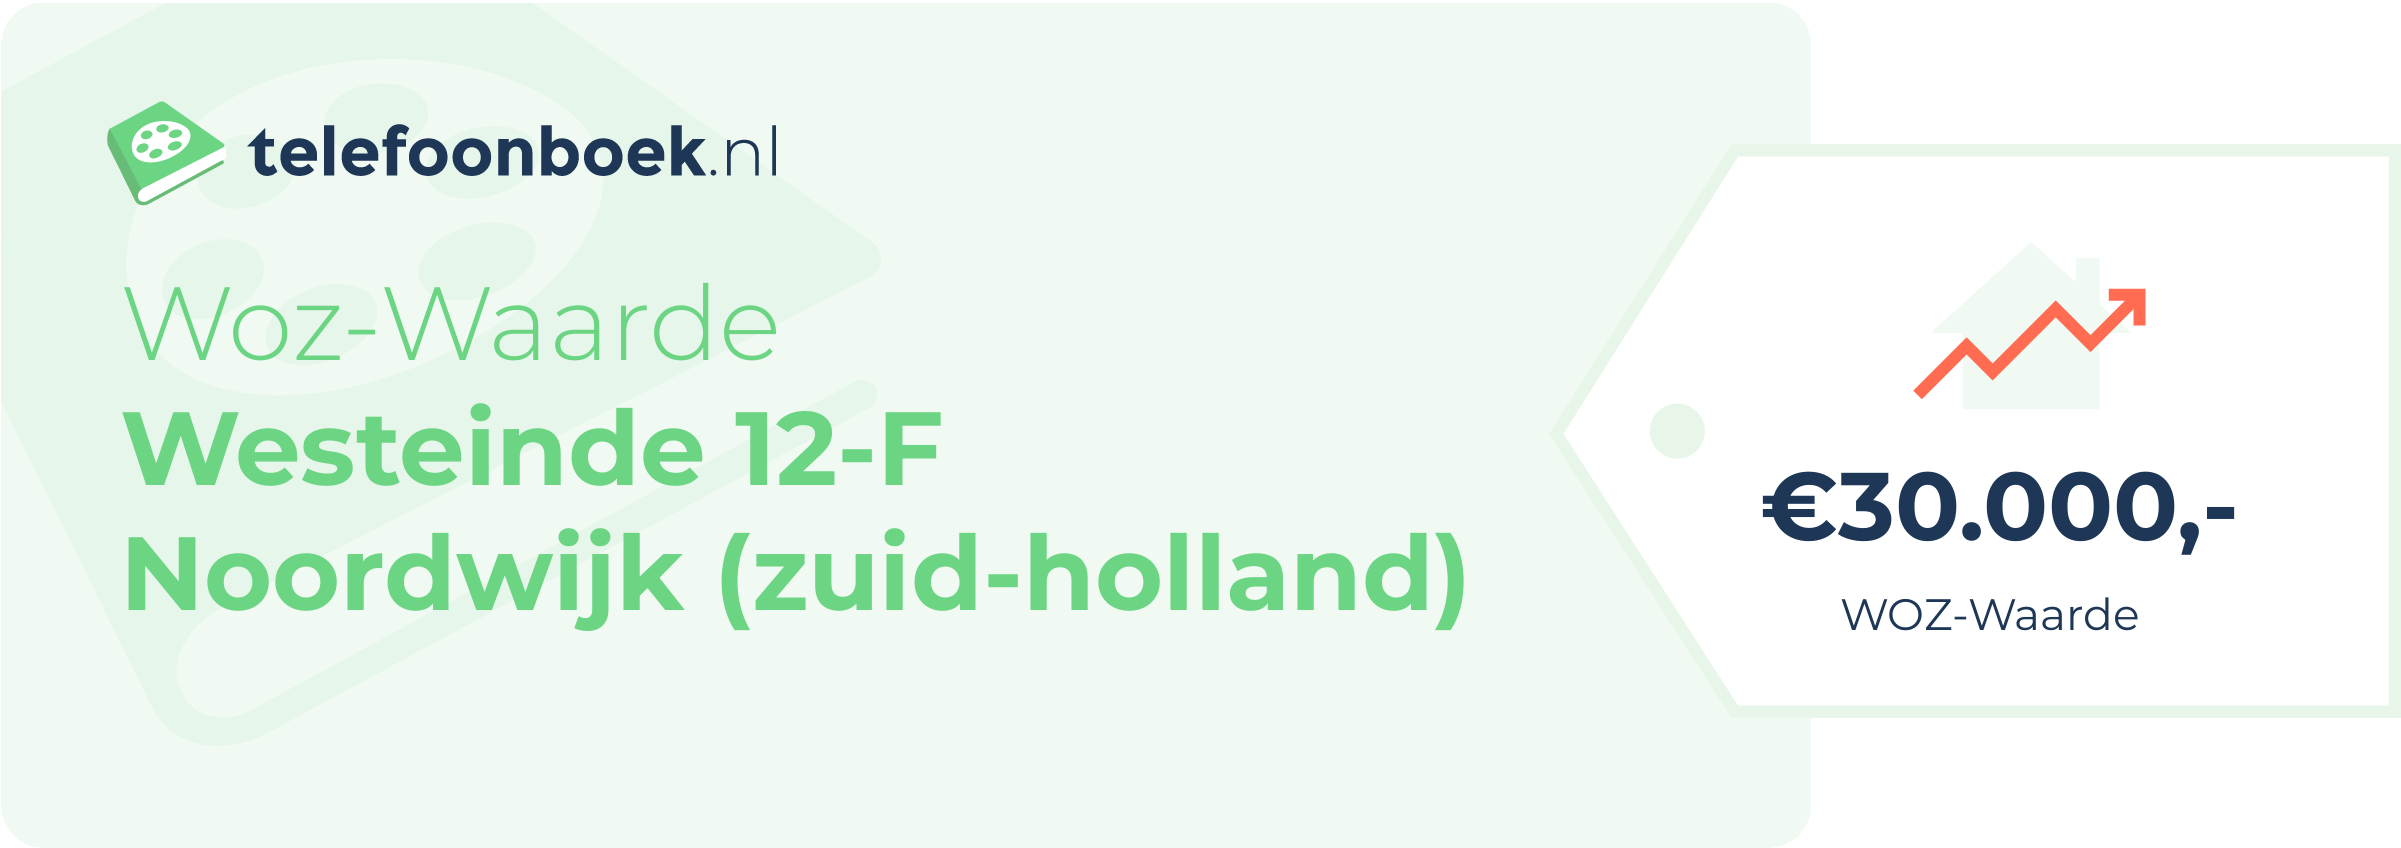 WOZ-waarde Westeinde 12-F Noordwijk (Zuid-Holland)